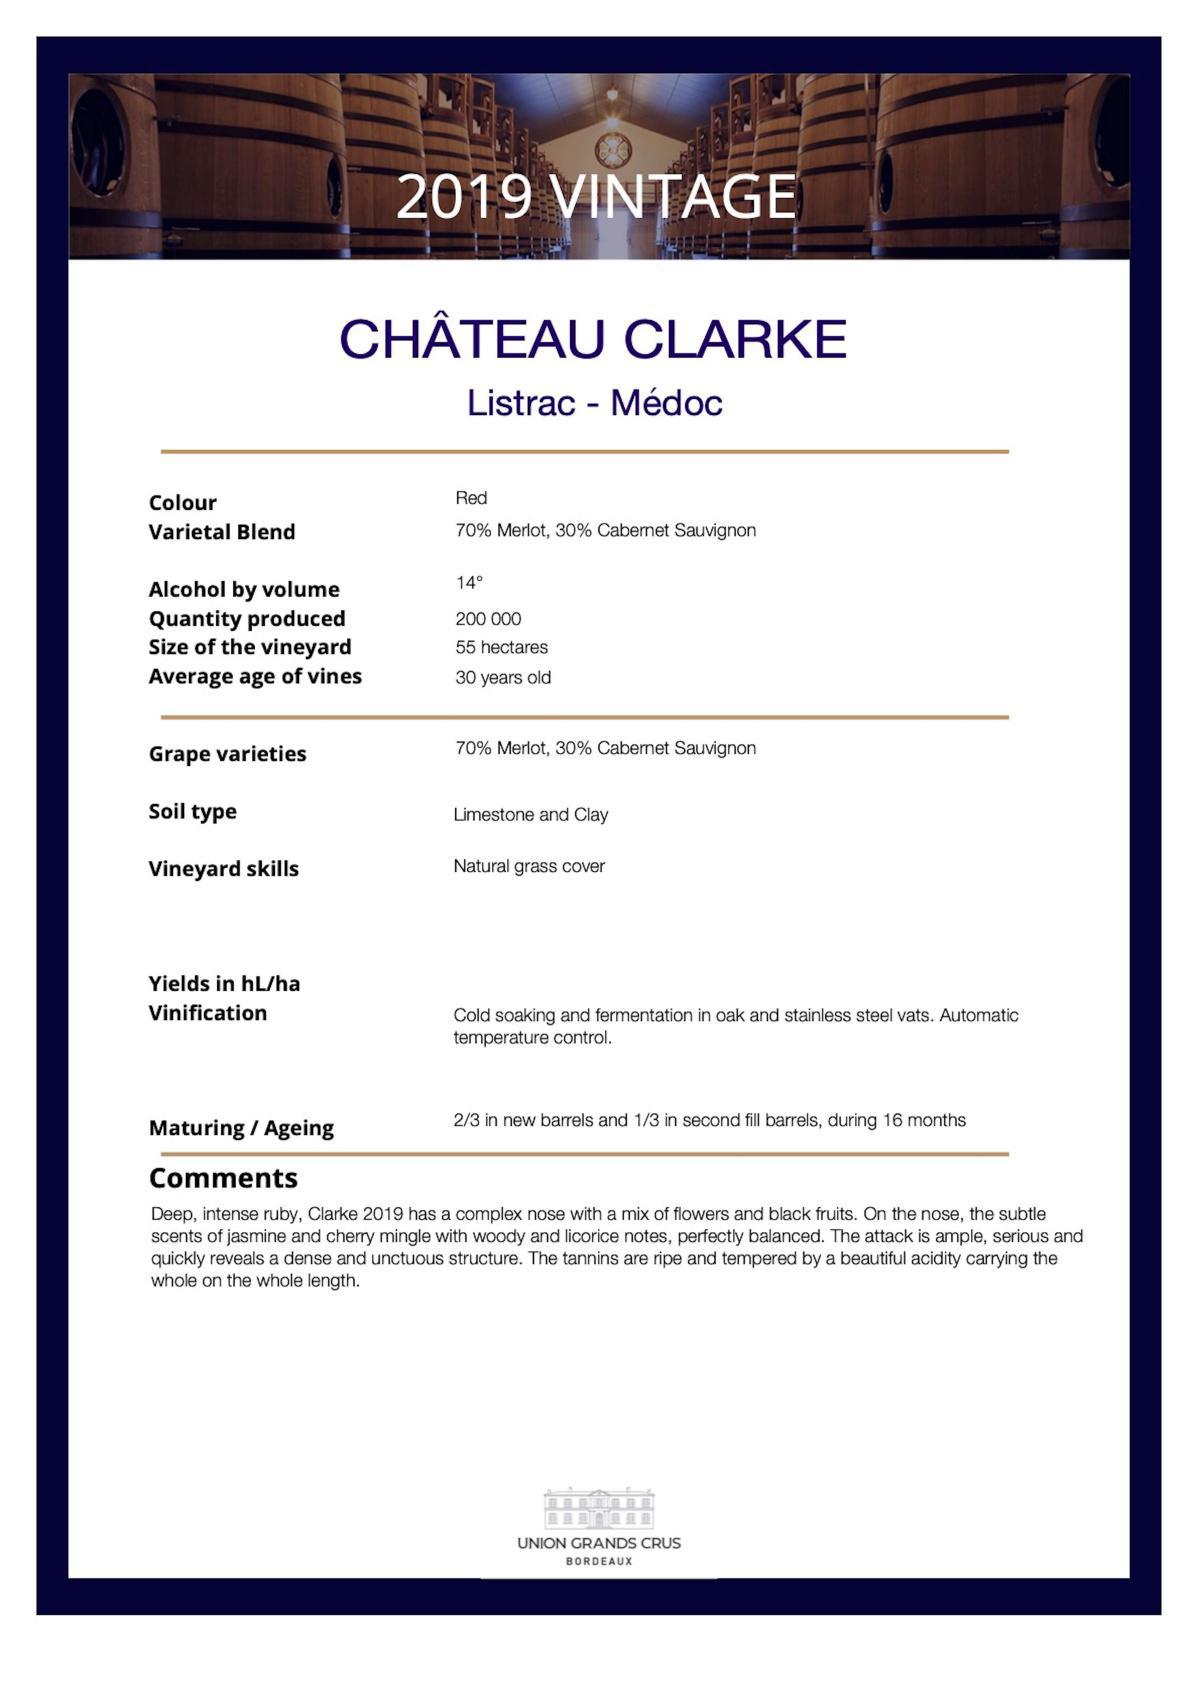 Château Clarke 